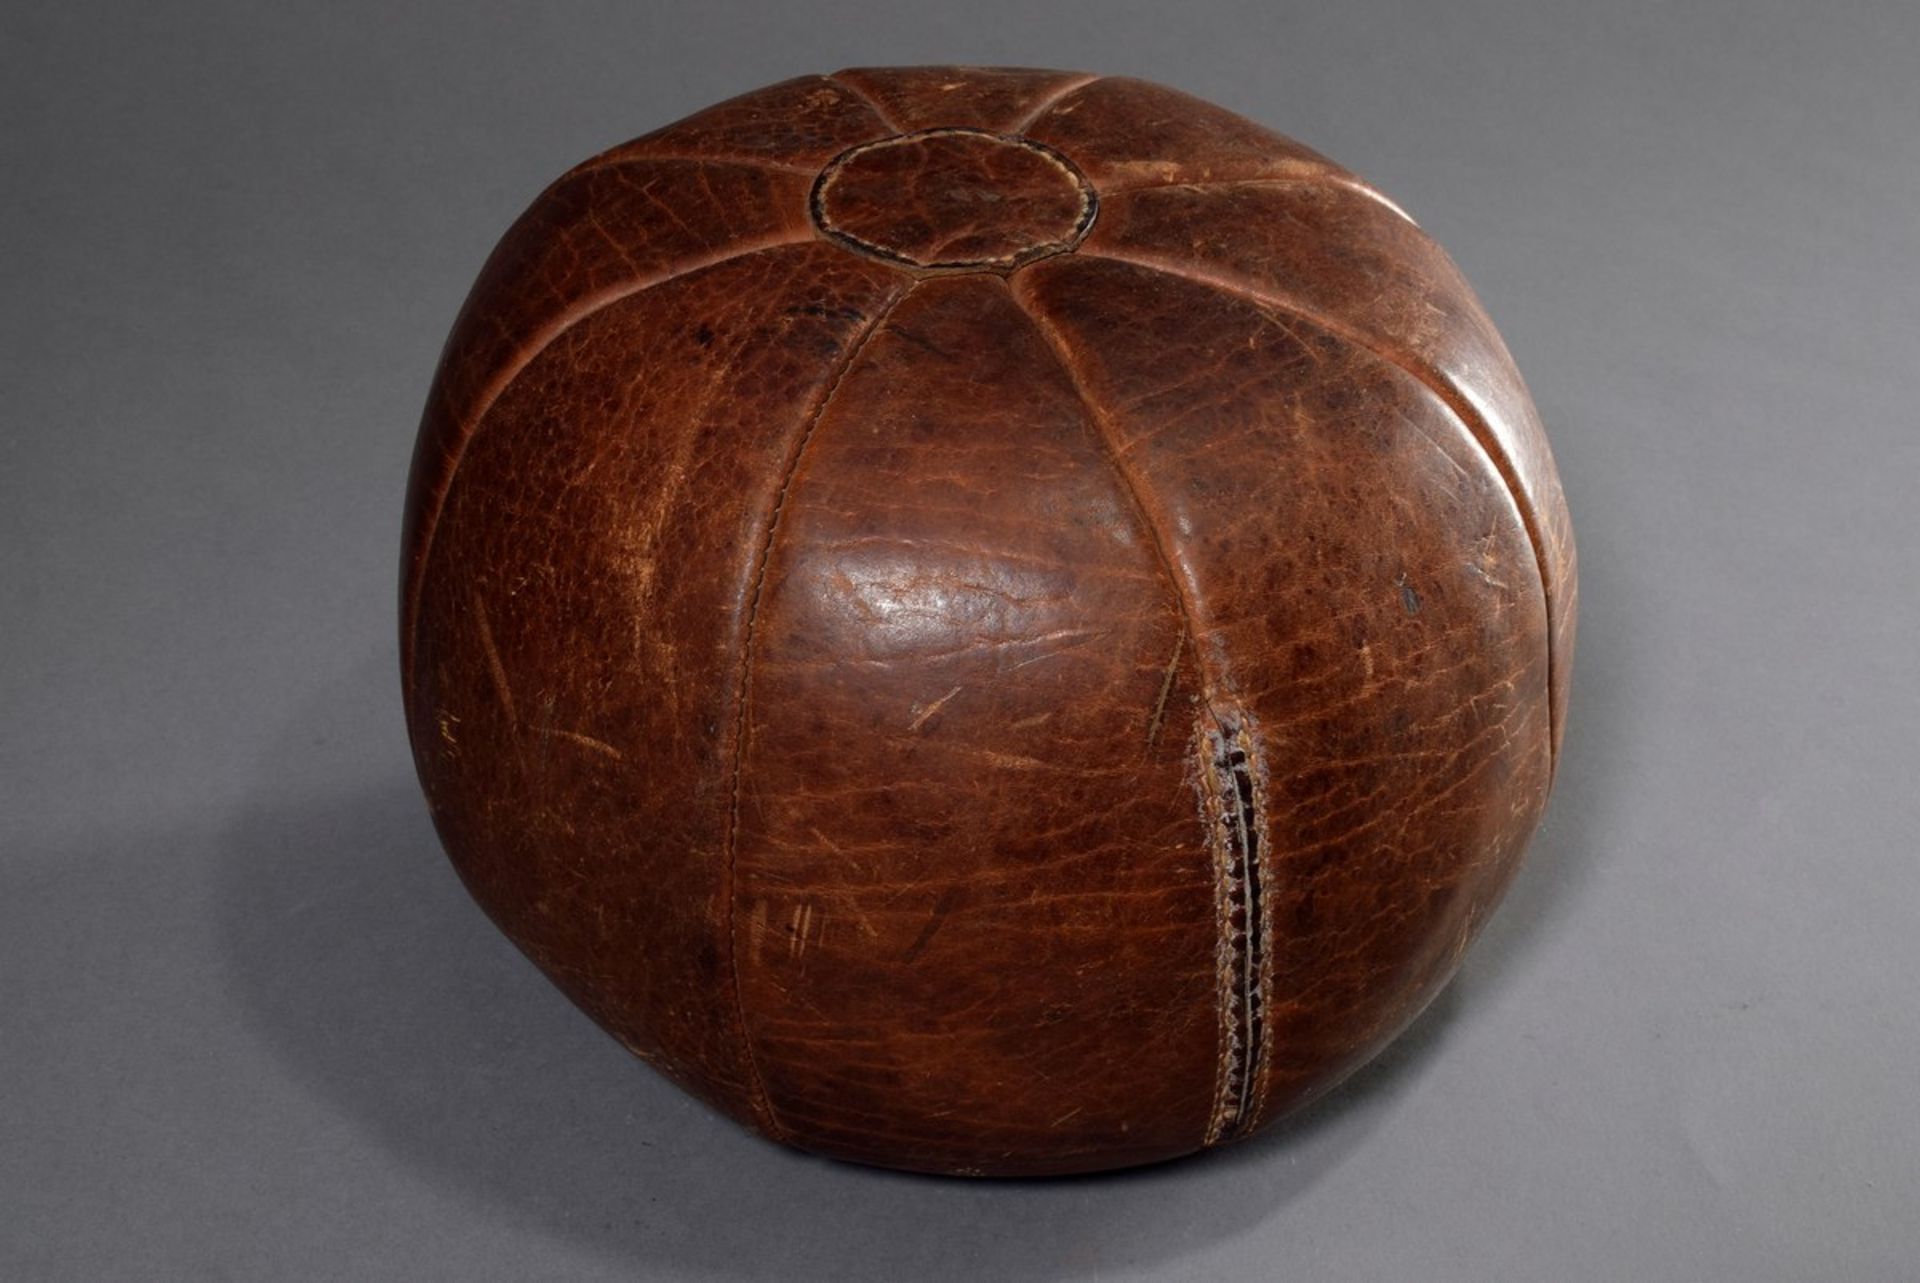 Alter Leder Medizinball mit schöner Patina, braun, Ø ca. 28cm, leichte Gebrauchsspuren - Bild 2 aus 4